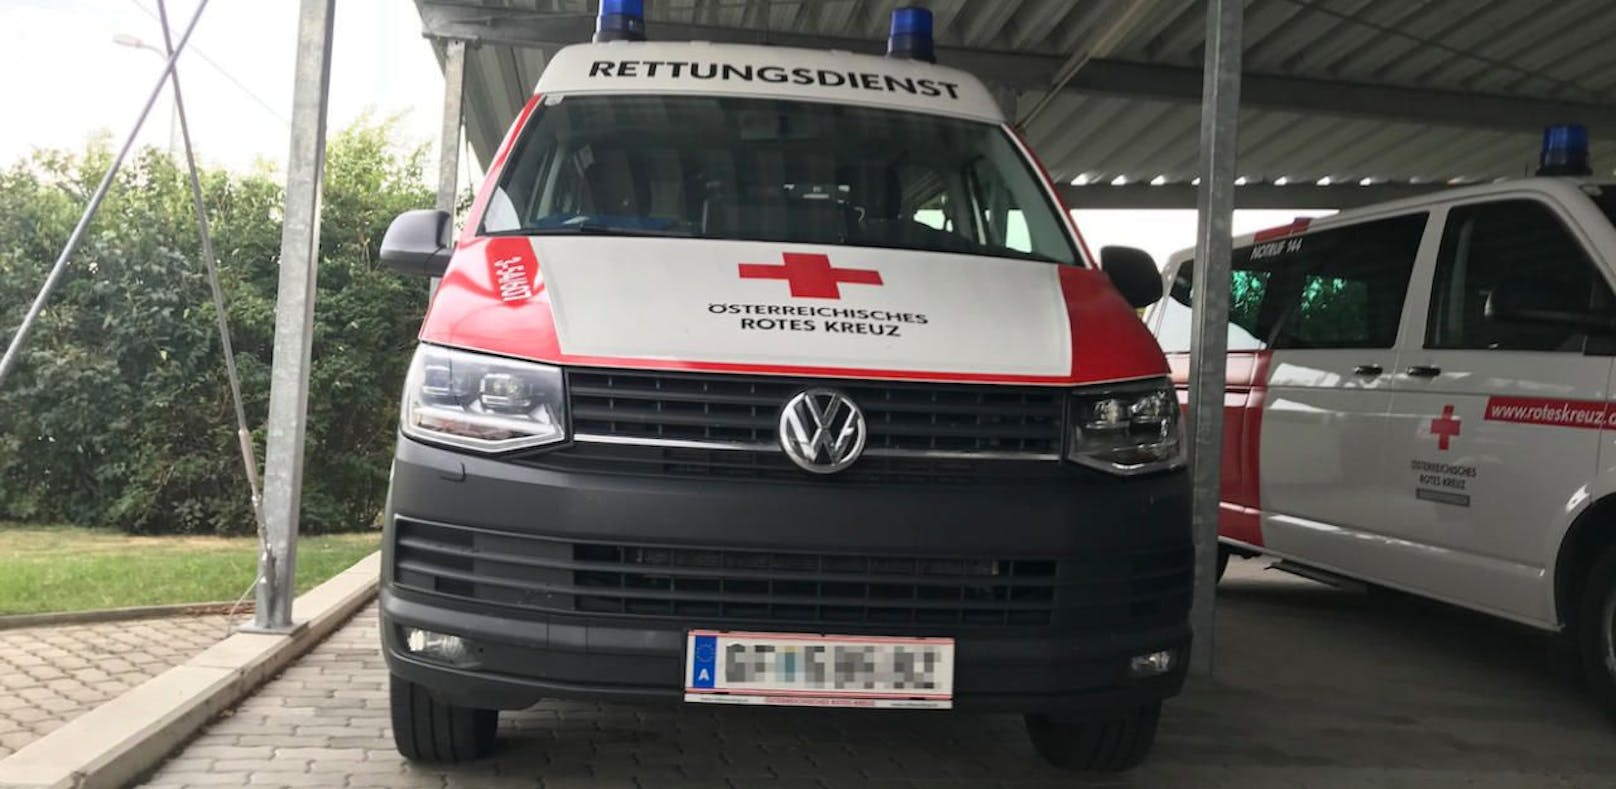 Unfall mit Rettungswagen im Bezirk Gänserndorf: Patientin wurde verletzt, musste wieder ins Spital.